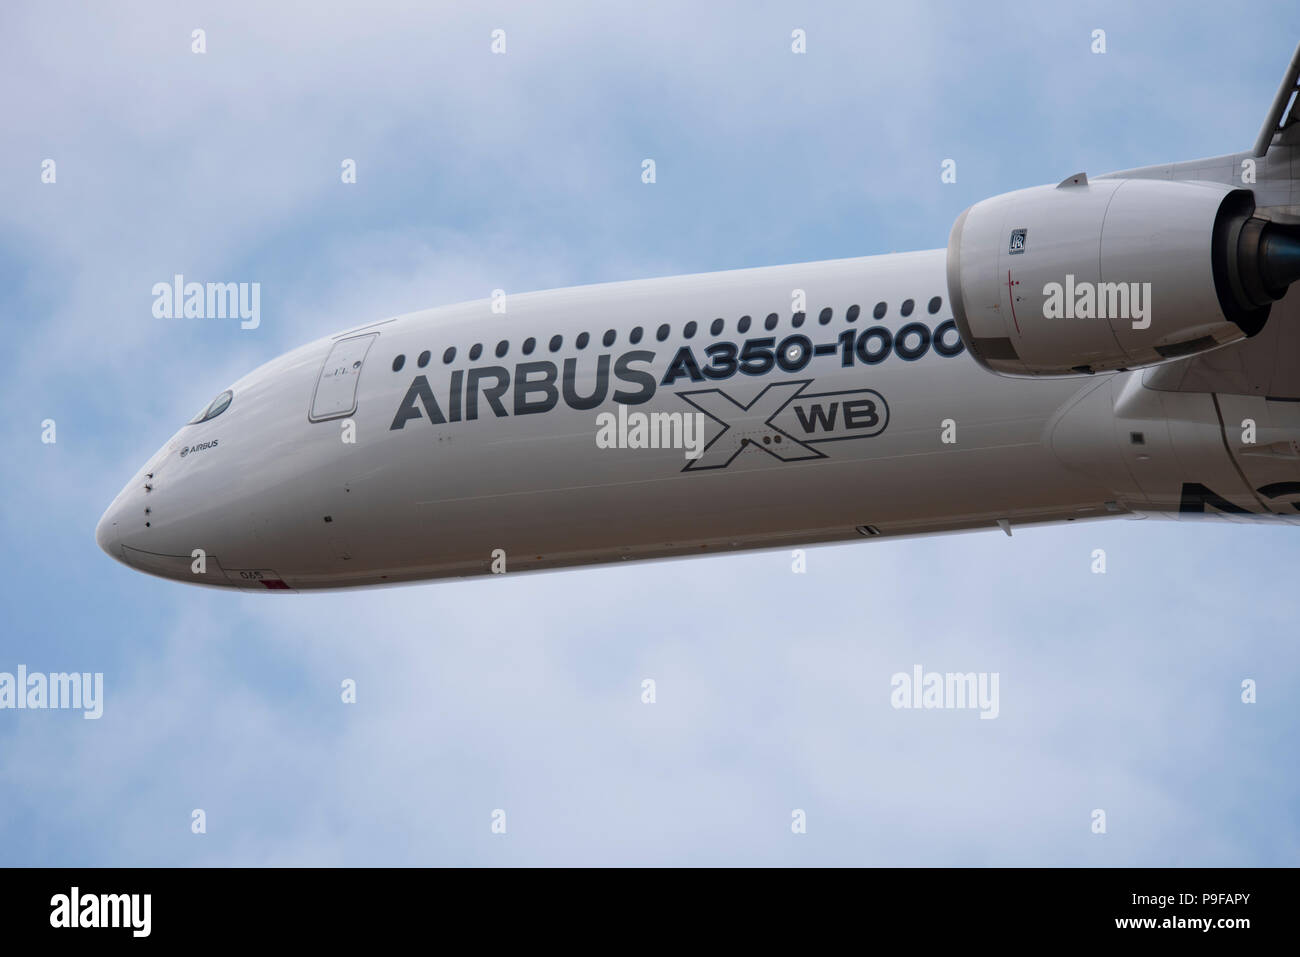 Airbus A350 -1000 aereo di linea jet aereo aeroporto di Farnborough, Hampshire, Regno Unito. Farnborough Airshow internazionale 2018. Il settore aerospaziale evento commerciale Foto Stock